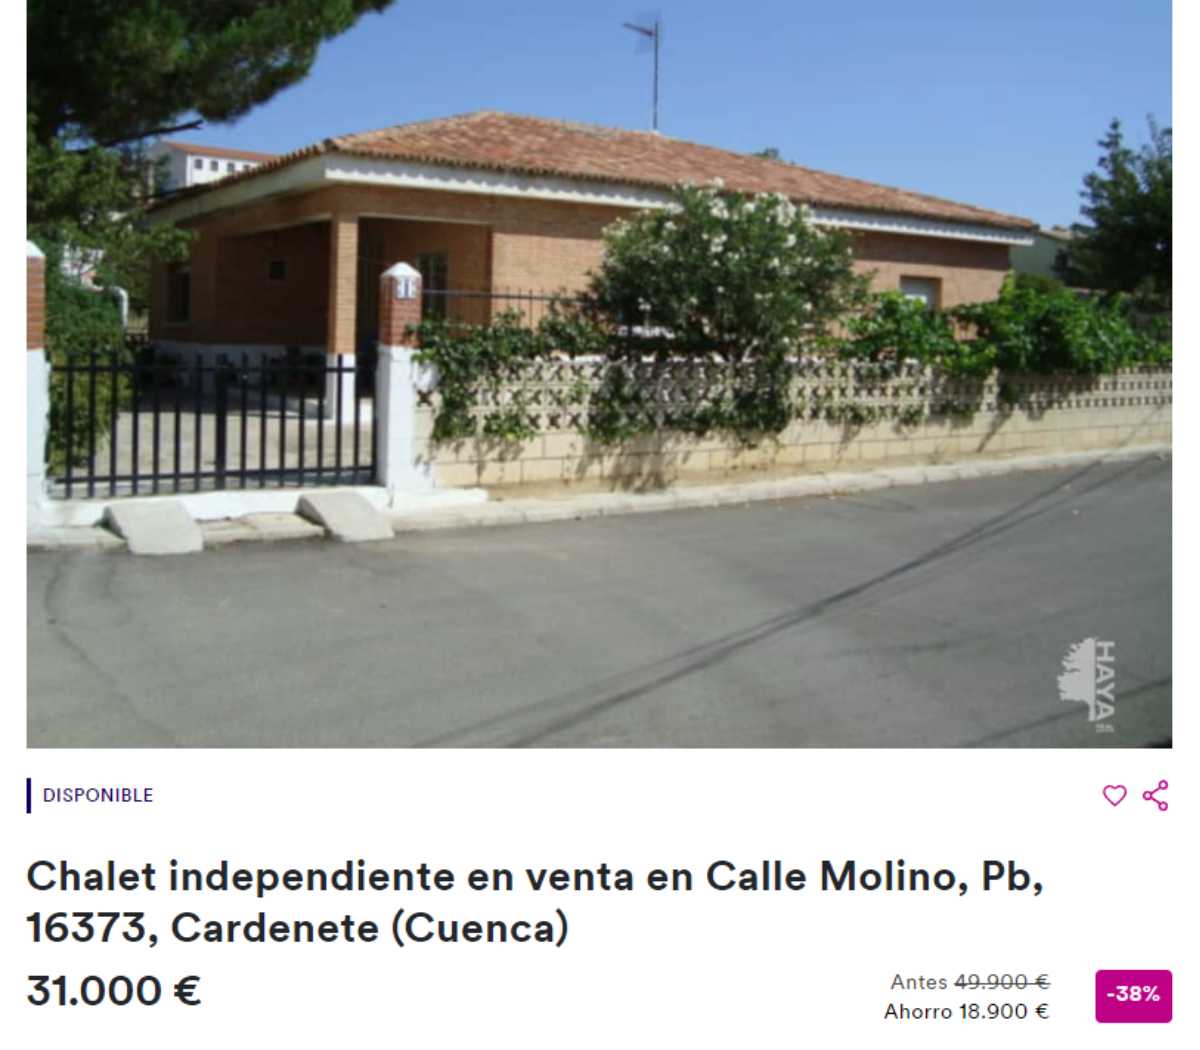 Chalet independiente en Cardenete por un precio de 31.000 euros